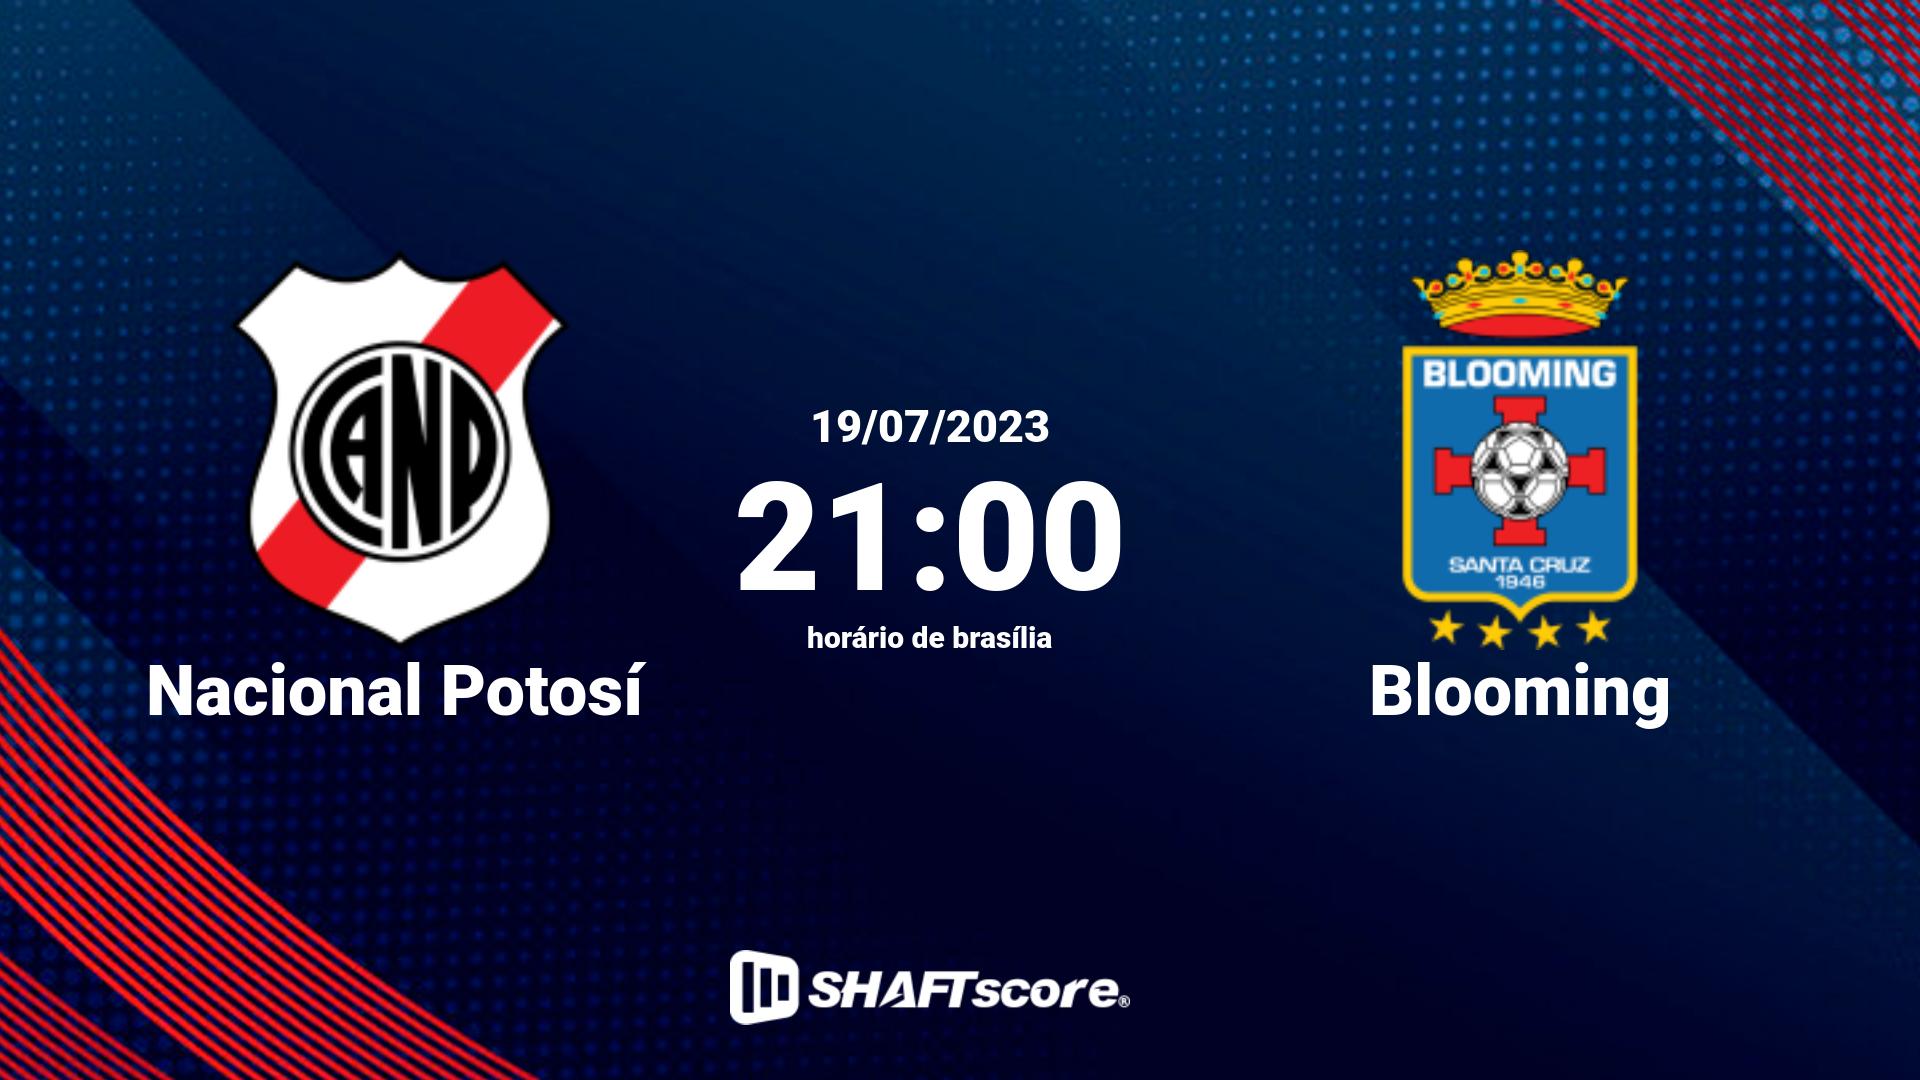 Estatísticas do jogo Nacional Potosí vs Blooming 19.07 21:00